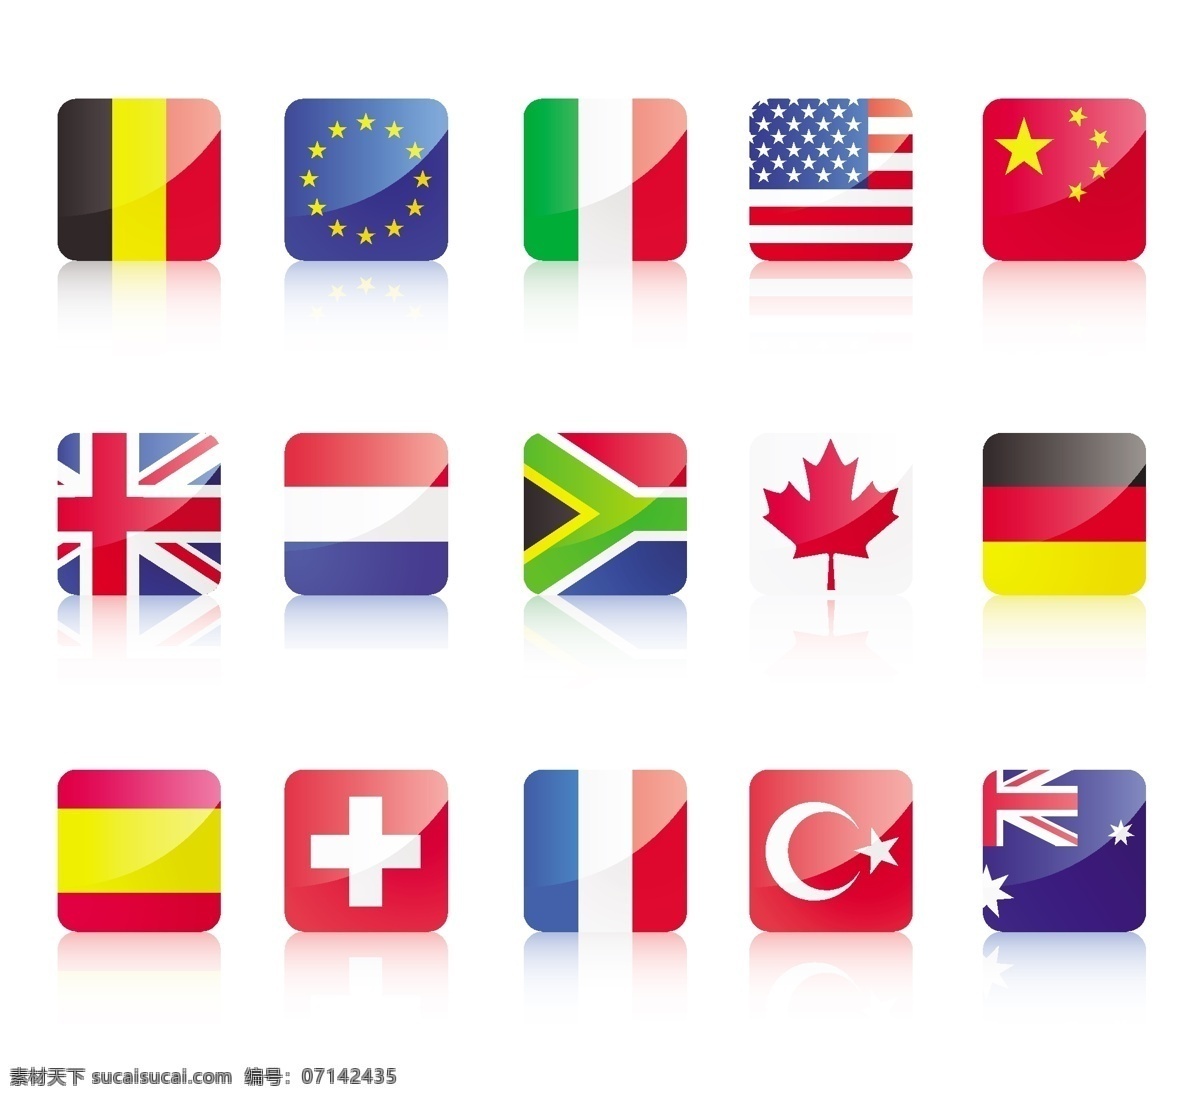 各国 国旗 水晶 图标 德国 法国 国旗图标 加拿大 矢量素材 水晶质感 英国 中国国旗 矢量国旗 瑞典 矢量图 其他矢量图